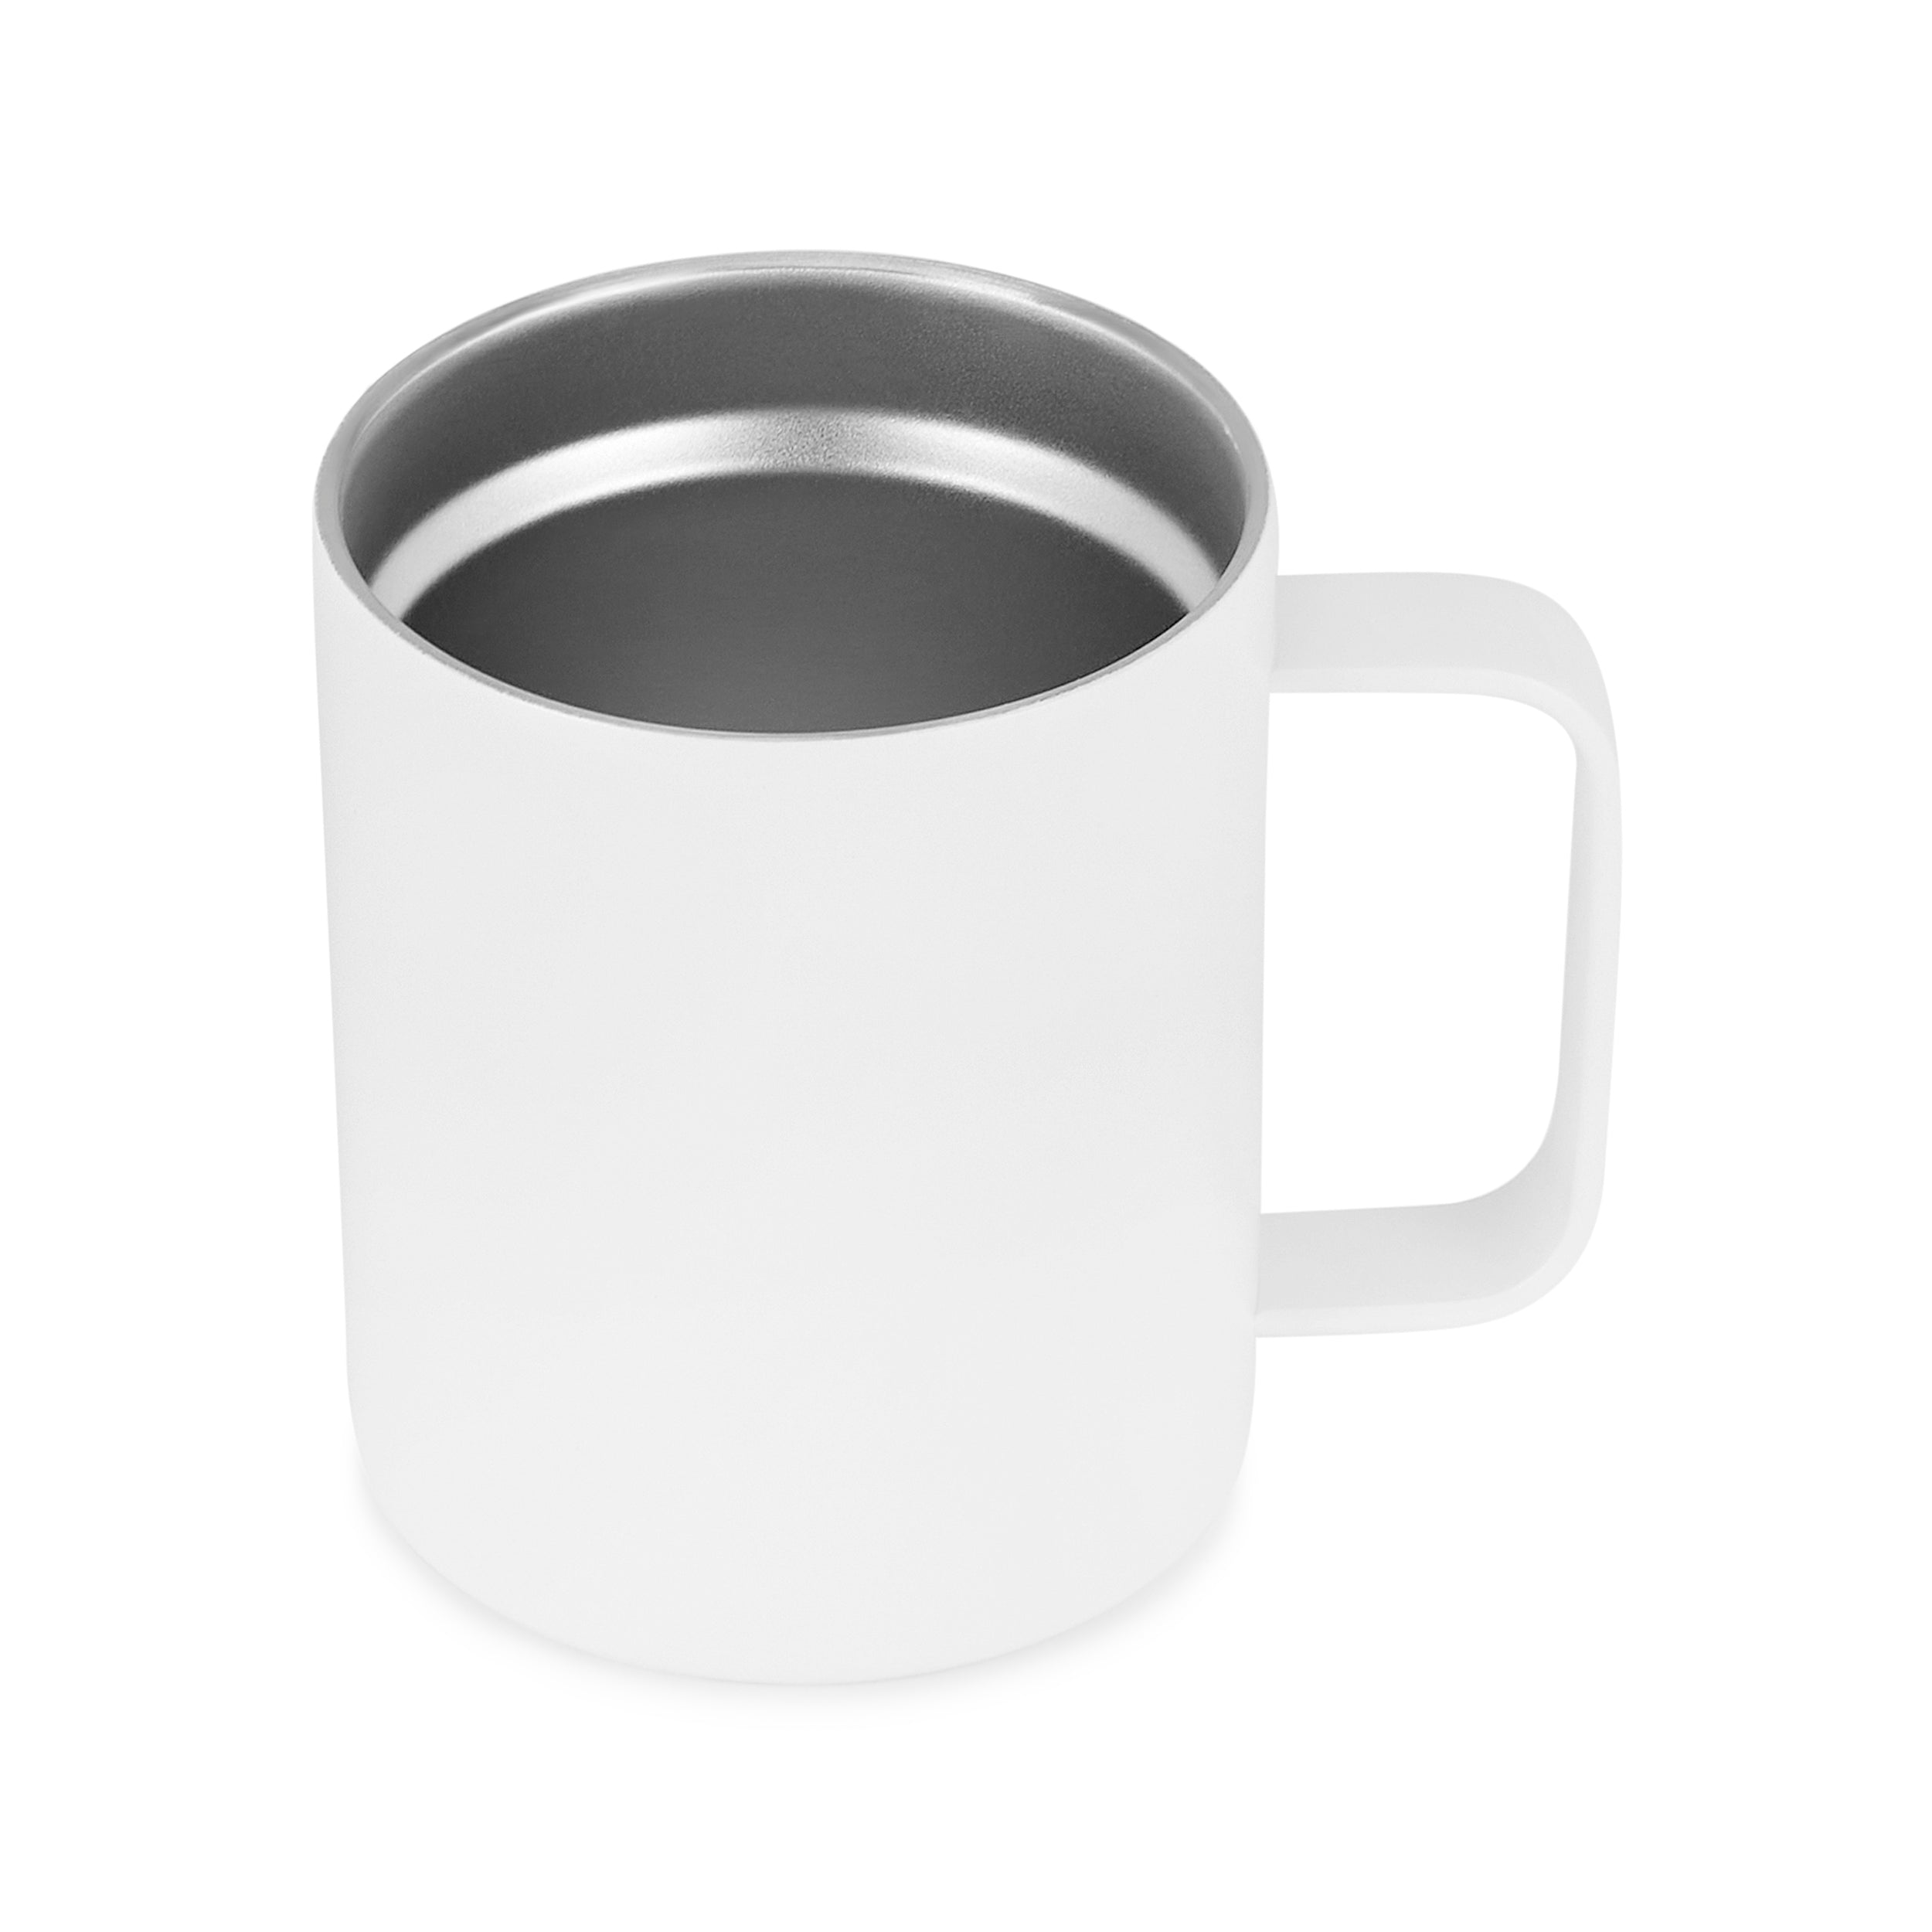 12oz Coffee Mug For Food